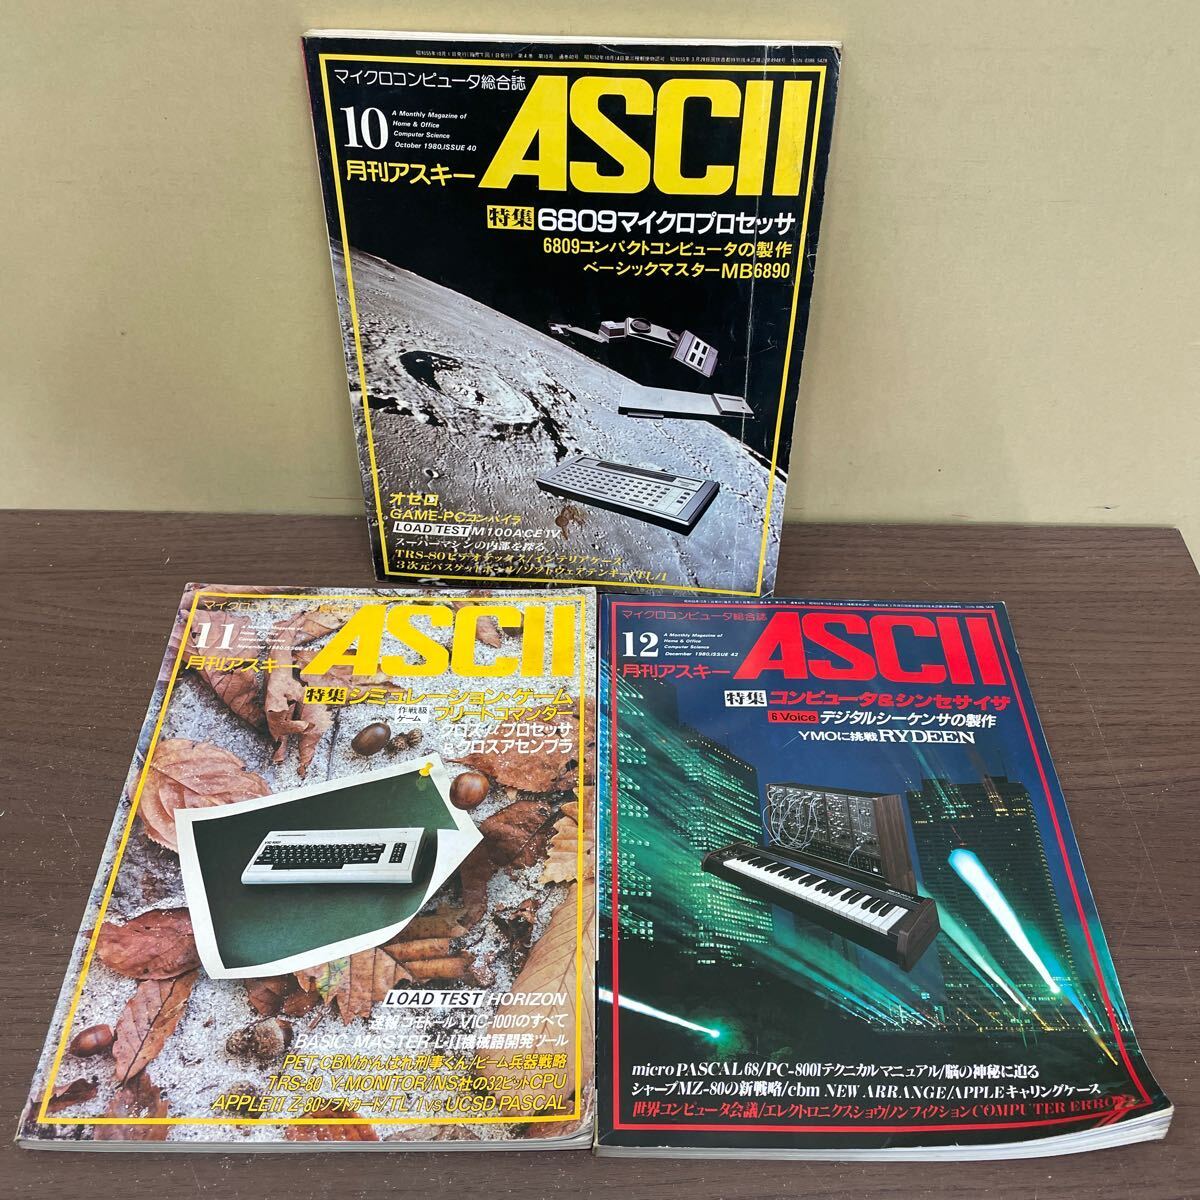 月刊アスキー ASCII 1980年 まとめ売り/古本/未清掃未検品/巻数状態はお写真でご確認下さい/ノークレームで/読み用で/劣化/背割/切込み/割